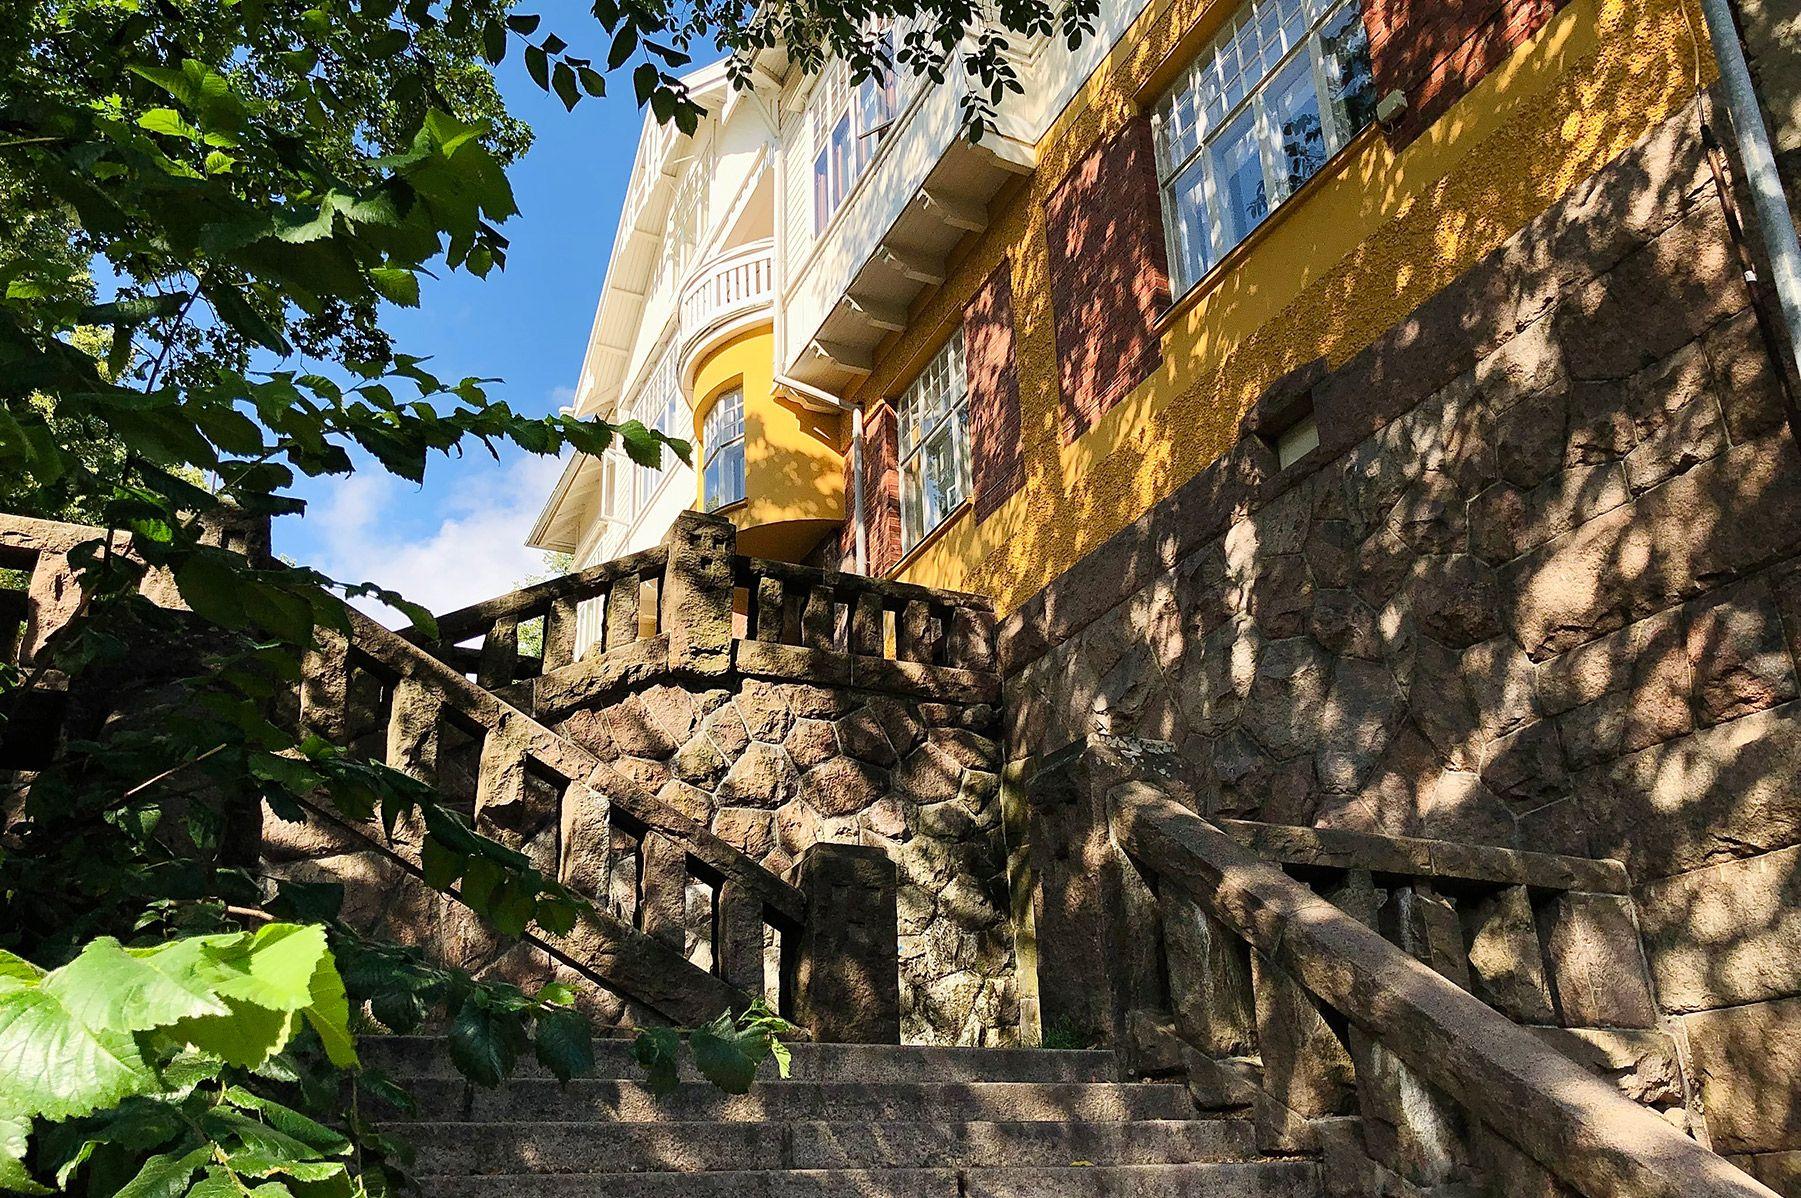 Mustainveljestenkujan mutkittelevat kiviportaat puiden varjossa. Portaiden yläpäässä on keltainen jugend-talo.